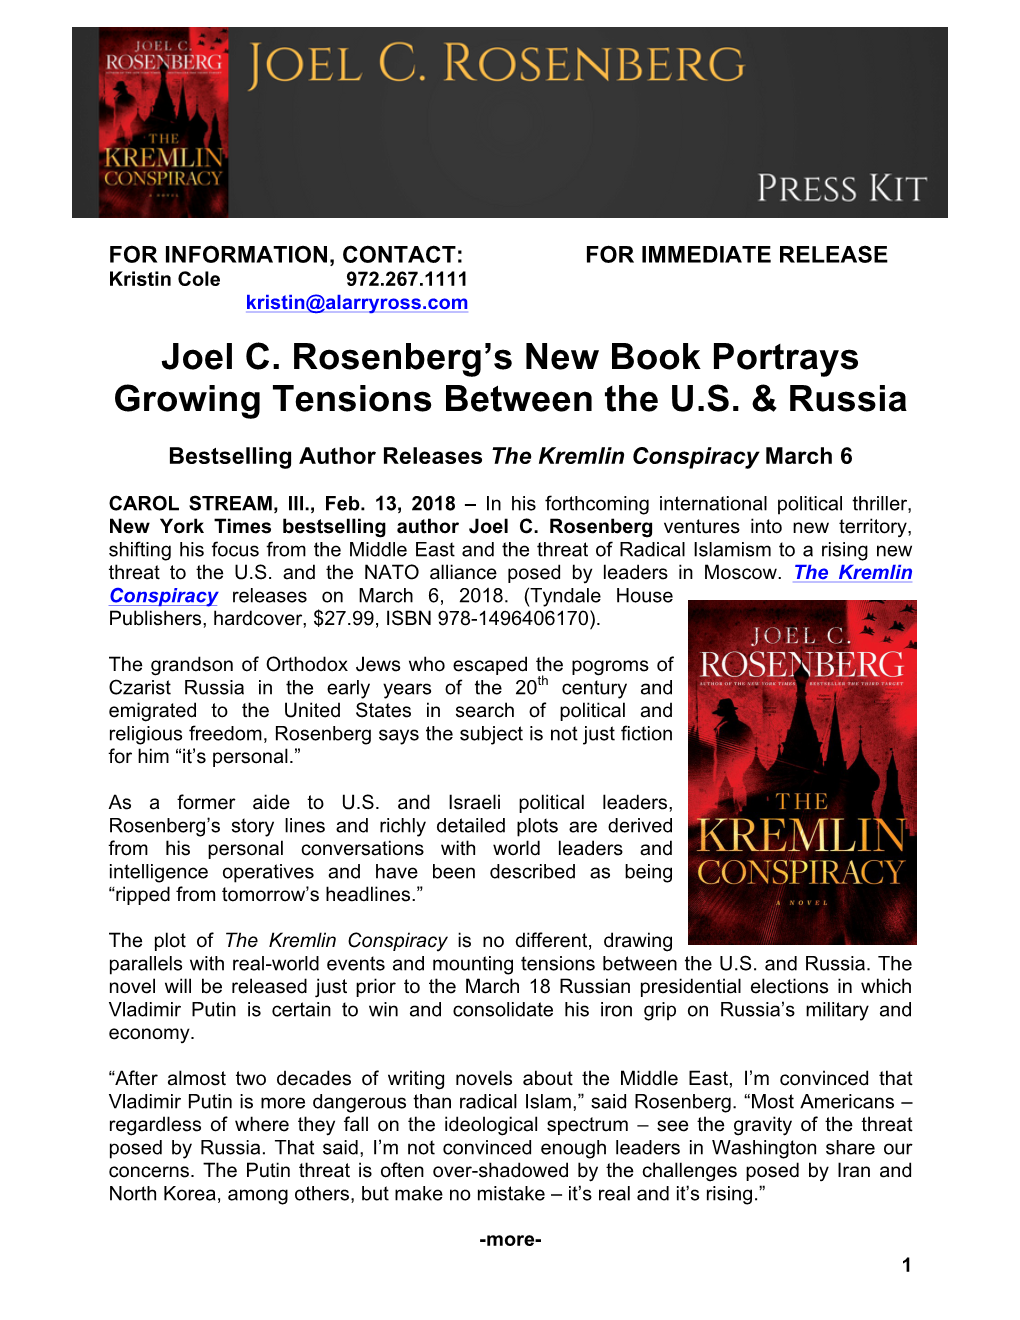 Joel C. Rosenberg's New Book Portrays Growing Tensions